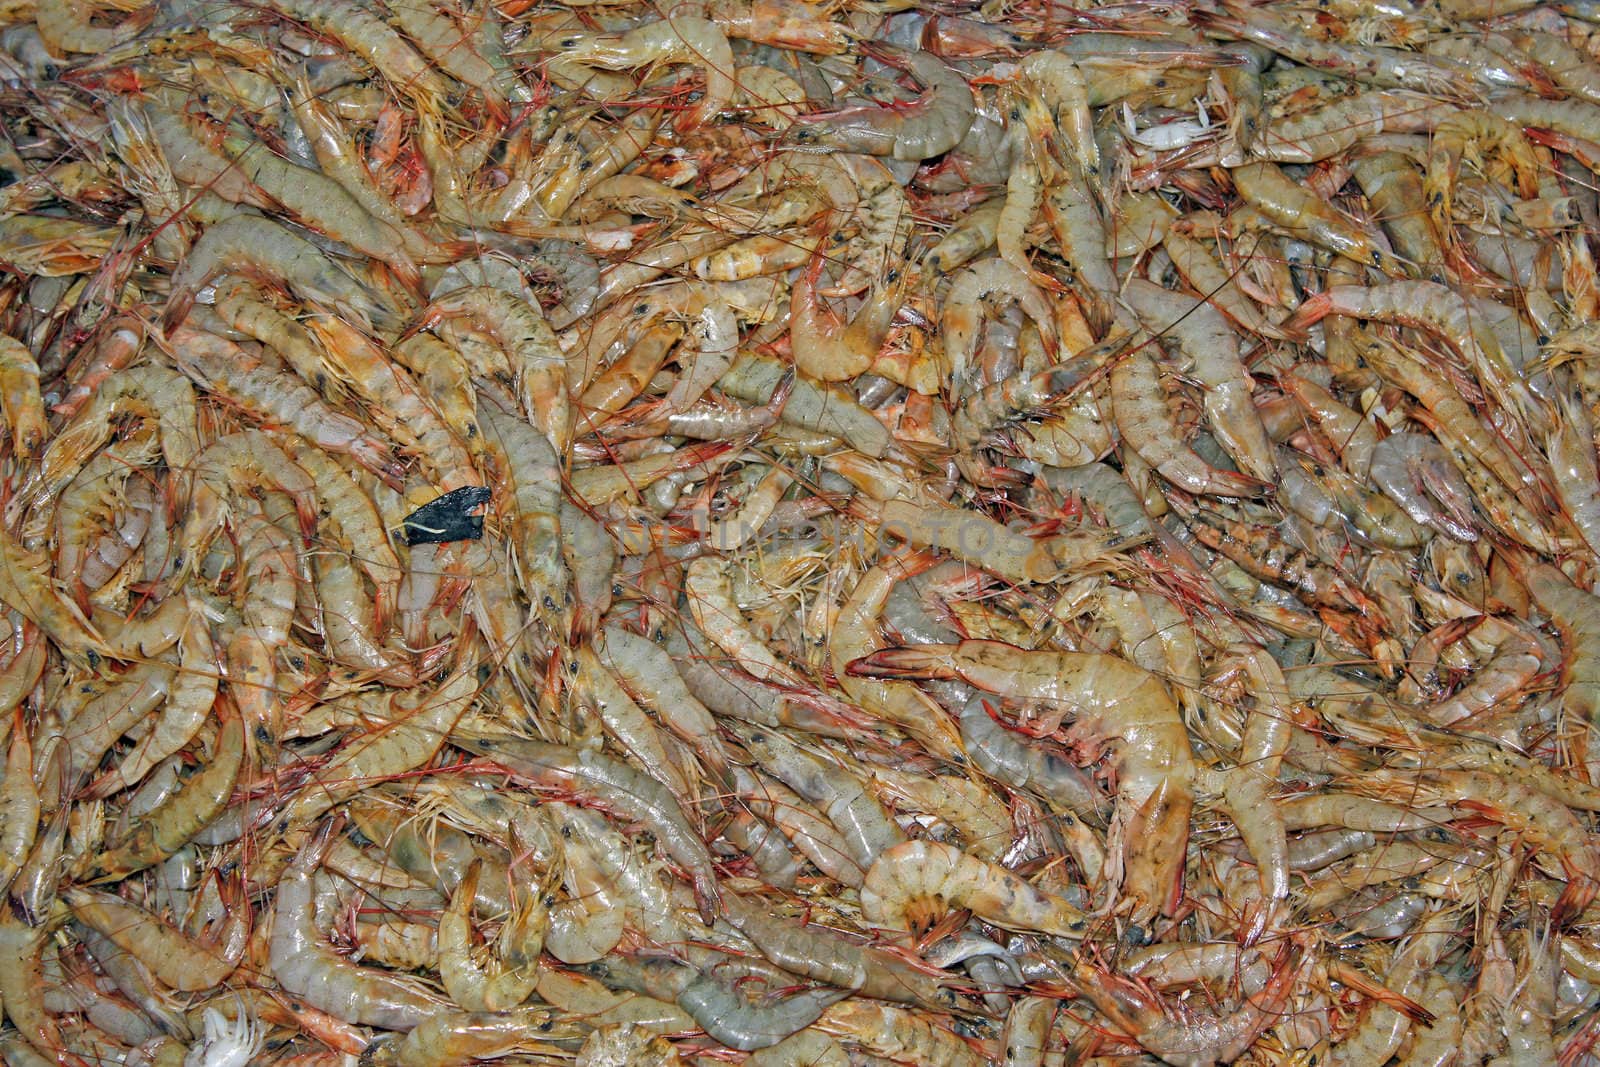 A background of fresh prawns.